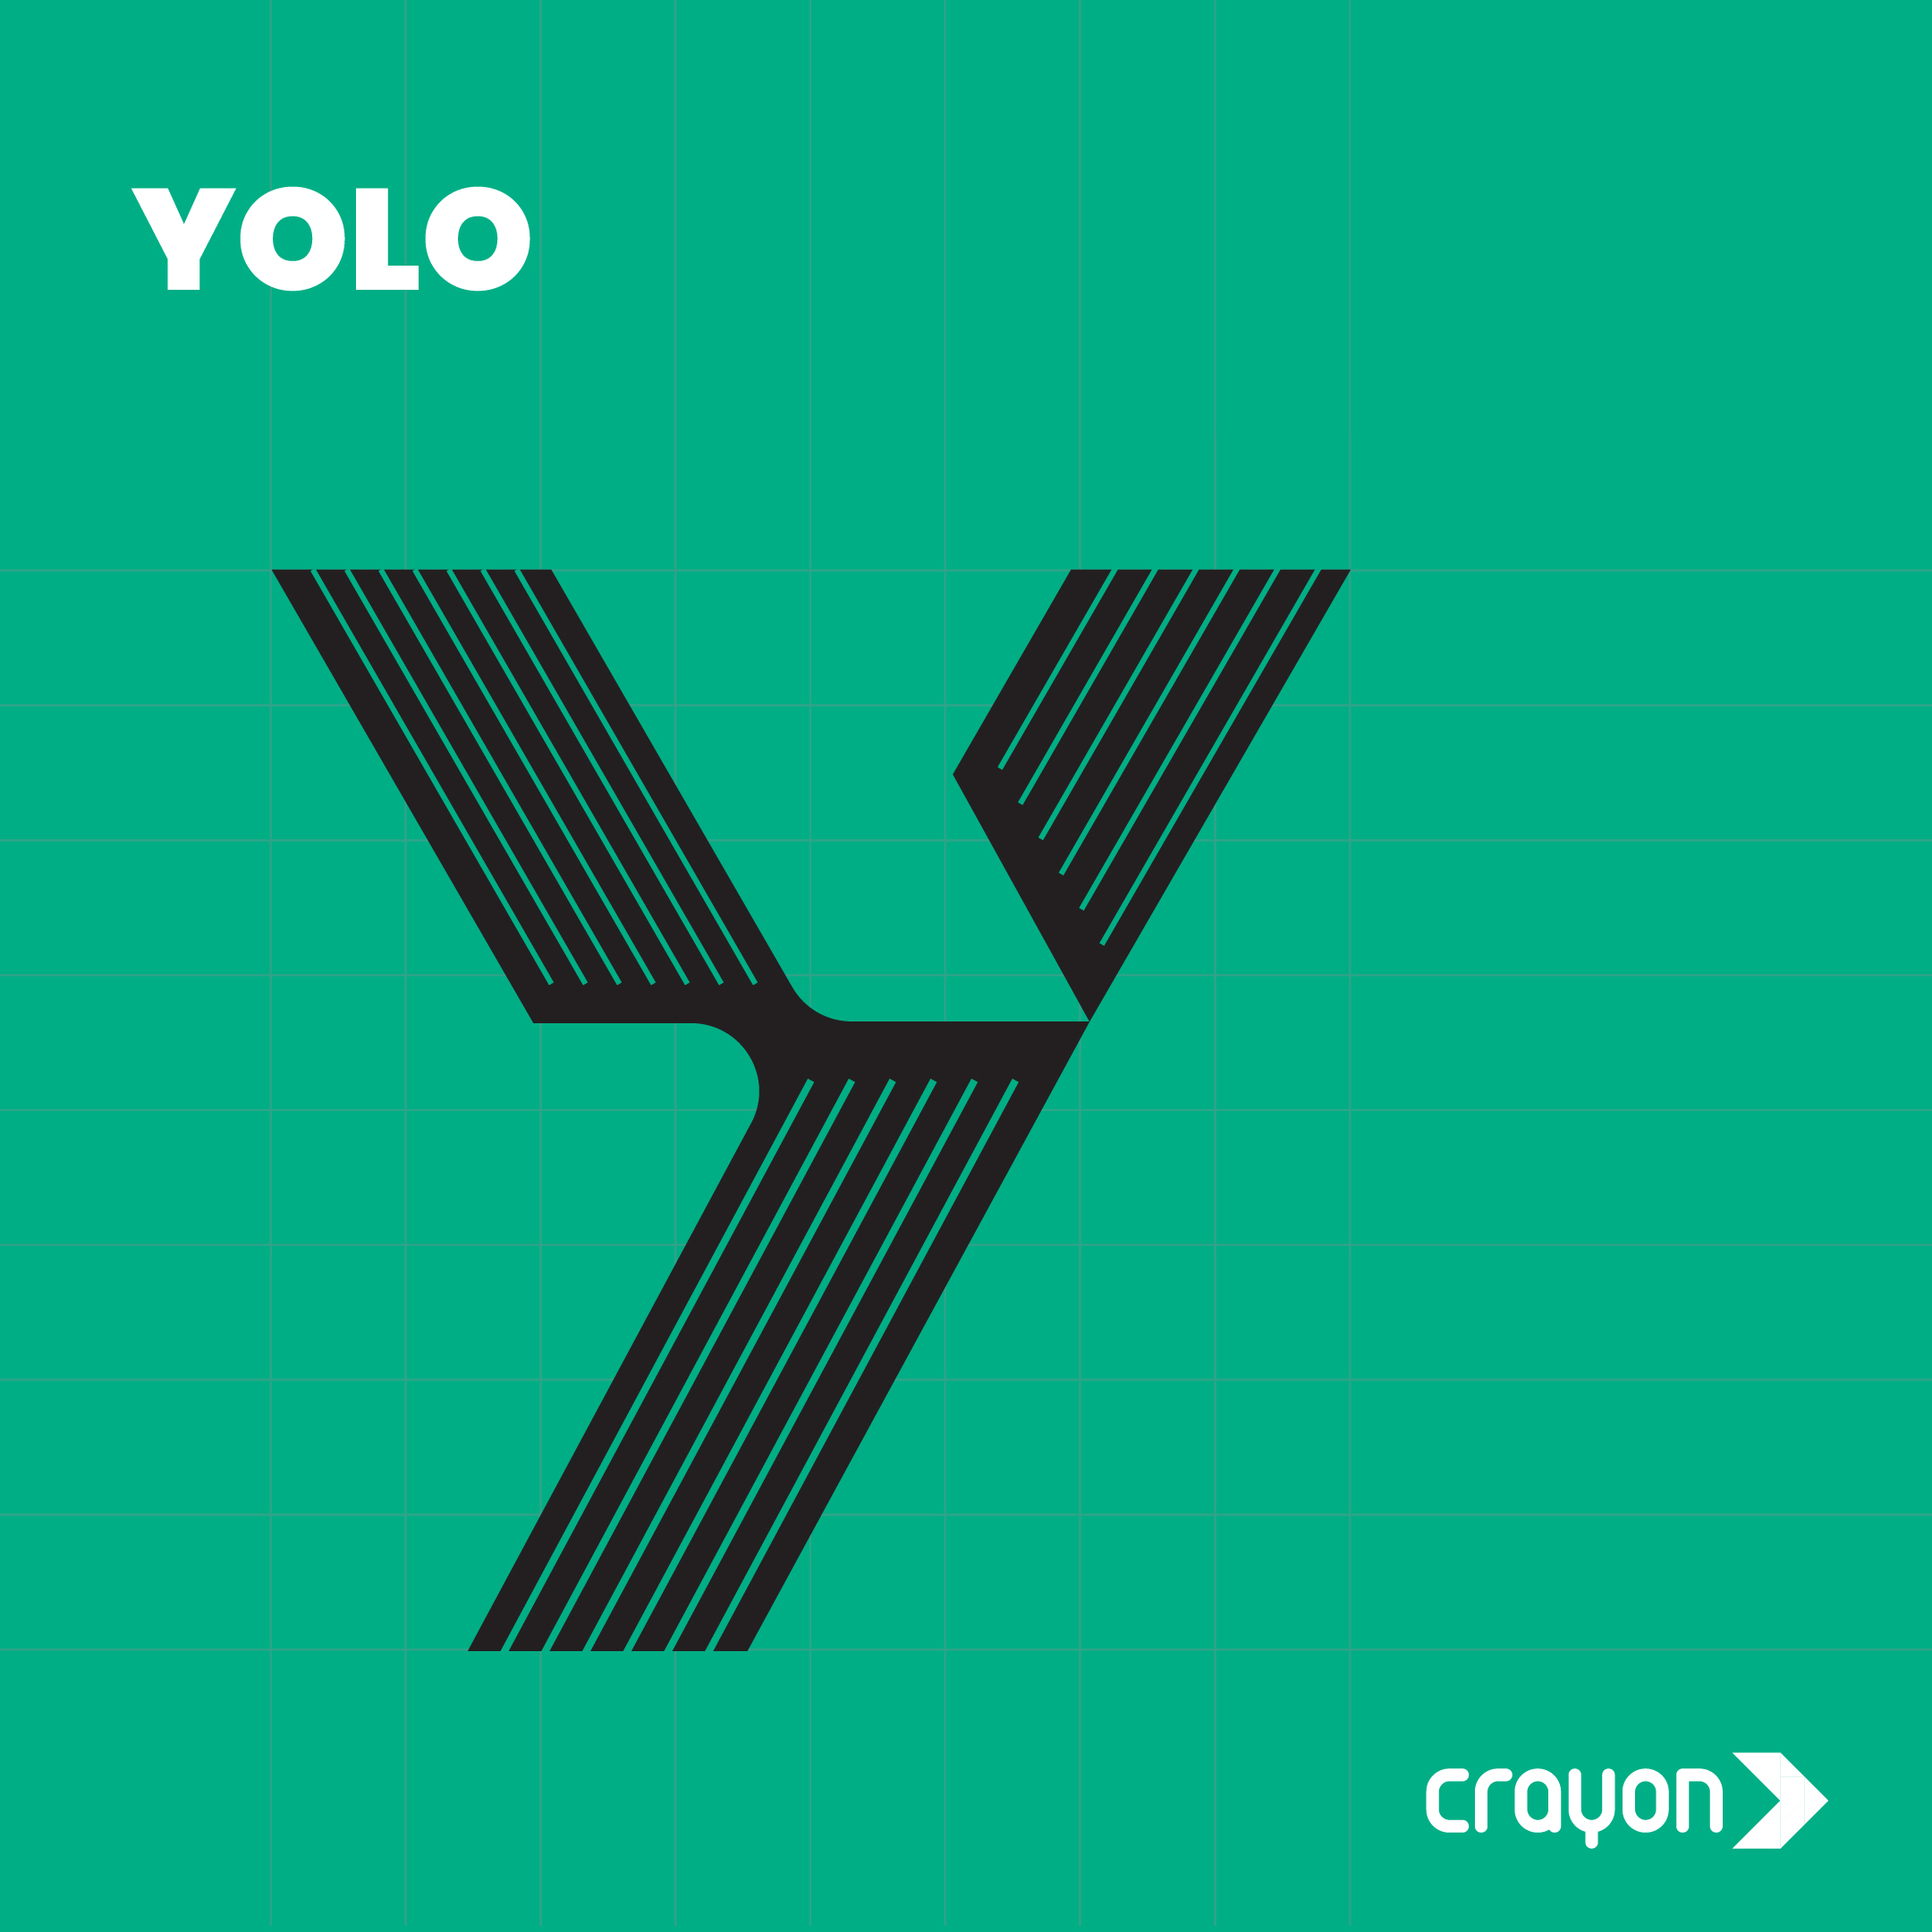 #TheAIAlphabet: Y for YOLO